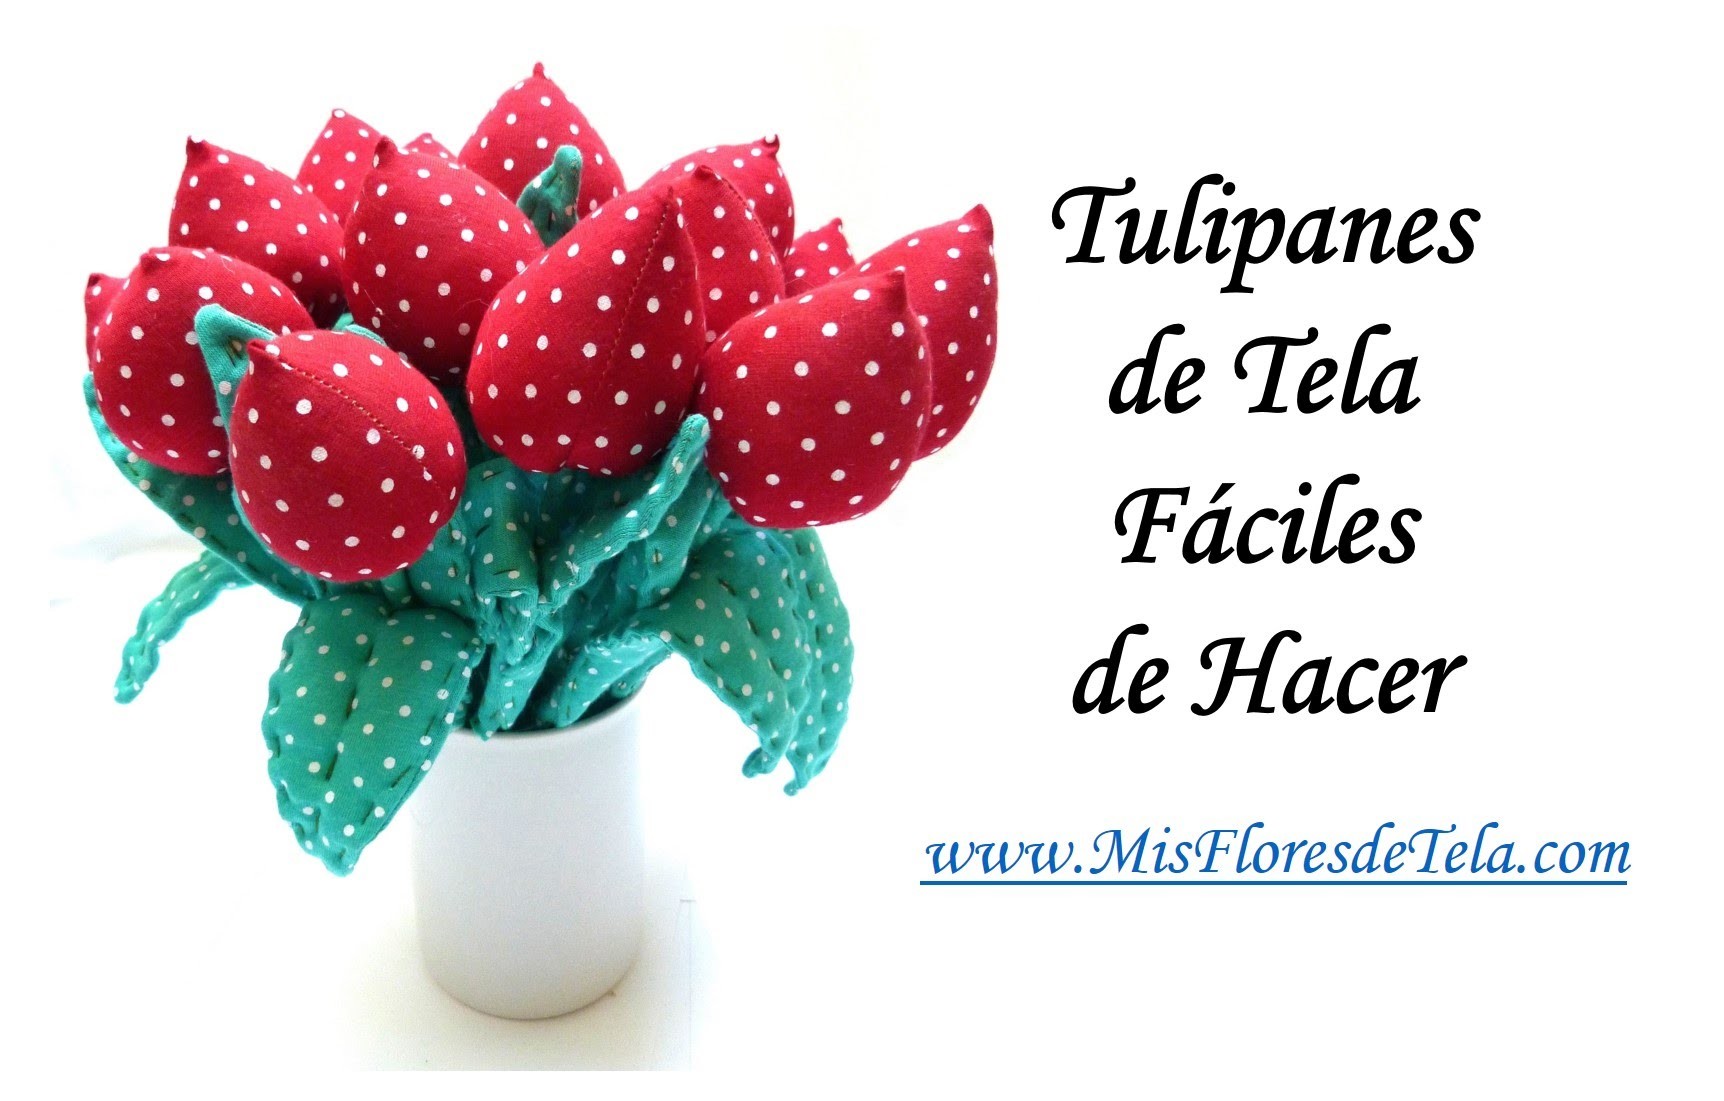 Tulipanes de Tela fáciles de hacer de Mis Flores de Tela